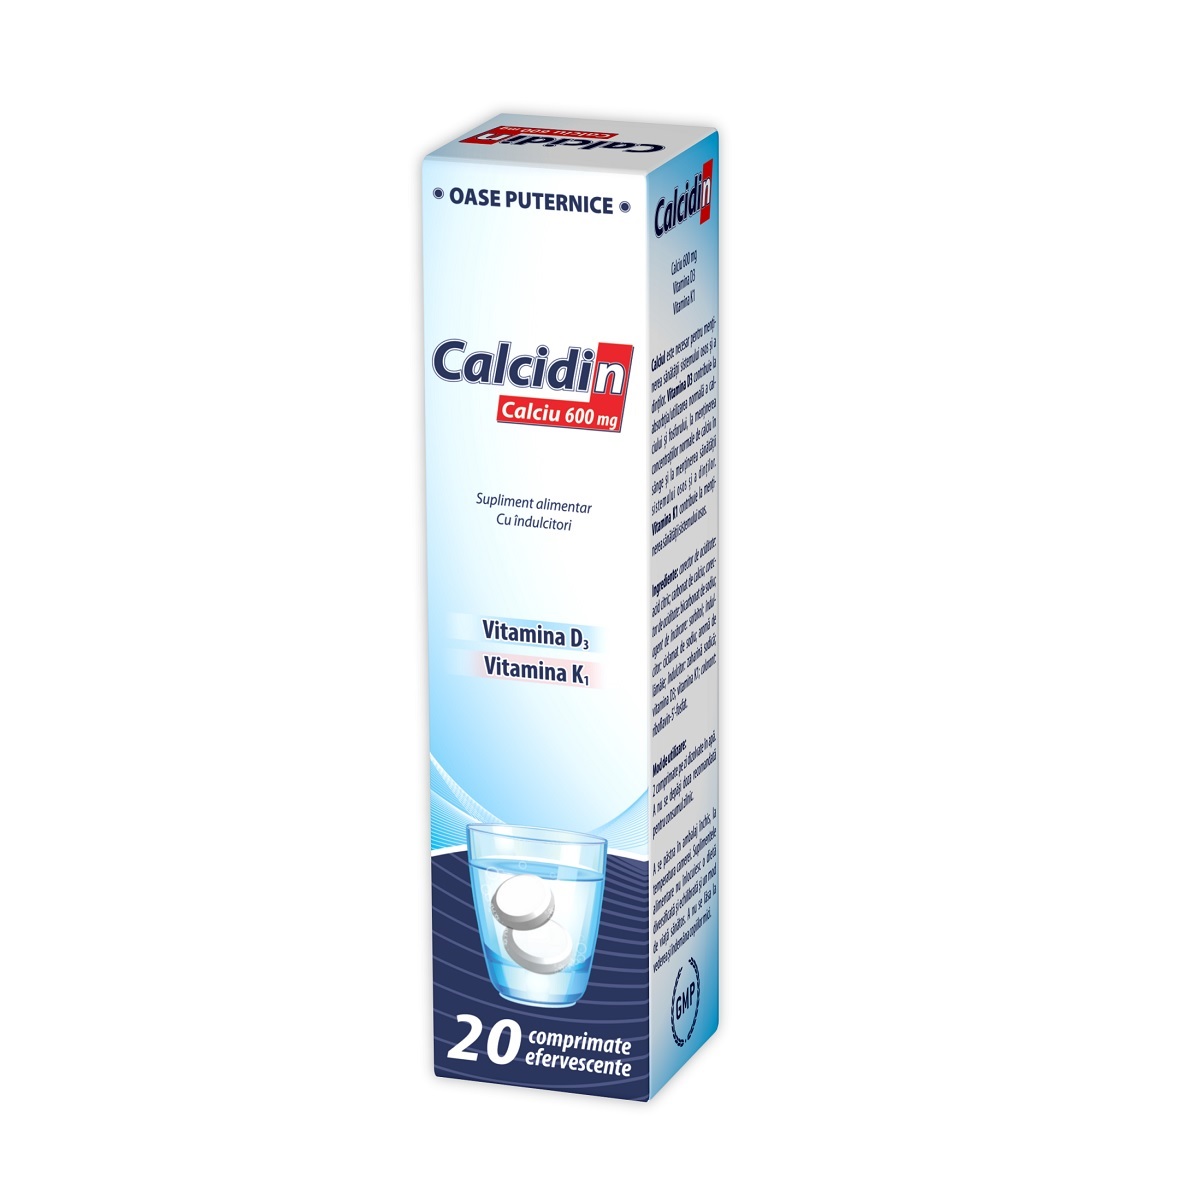 Osteoporoza - Calcidin 600 mg, 20 comprimate efervescente, Zdrovit, sinapis.ro